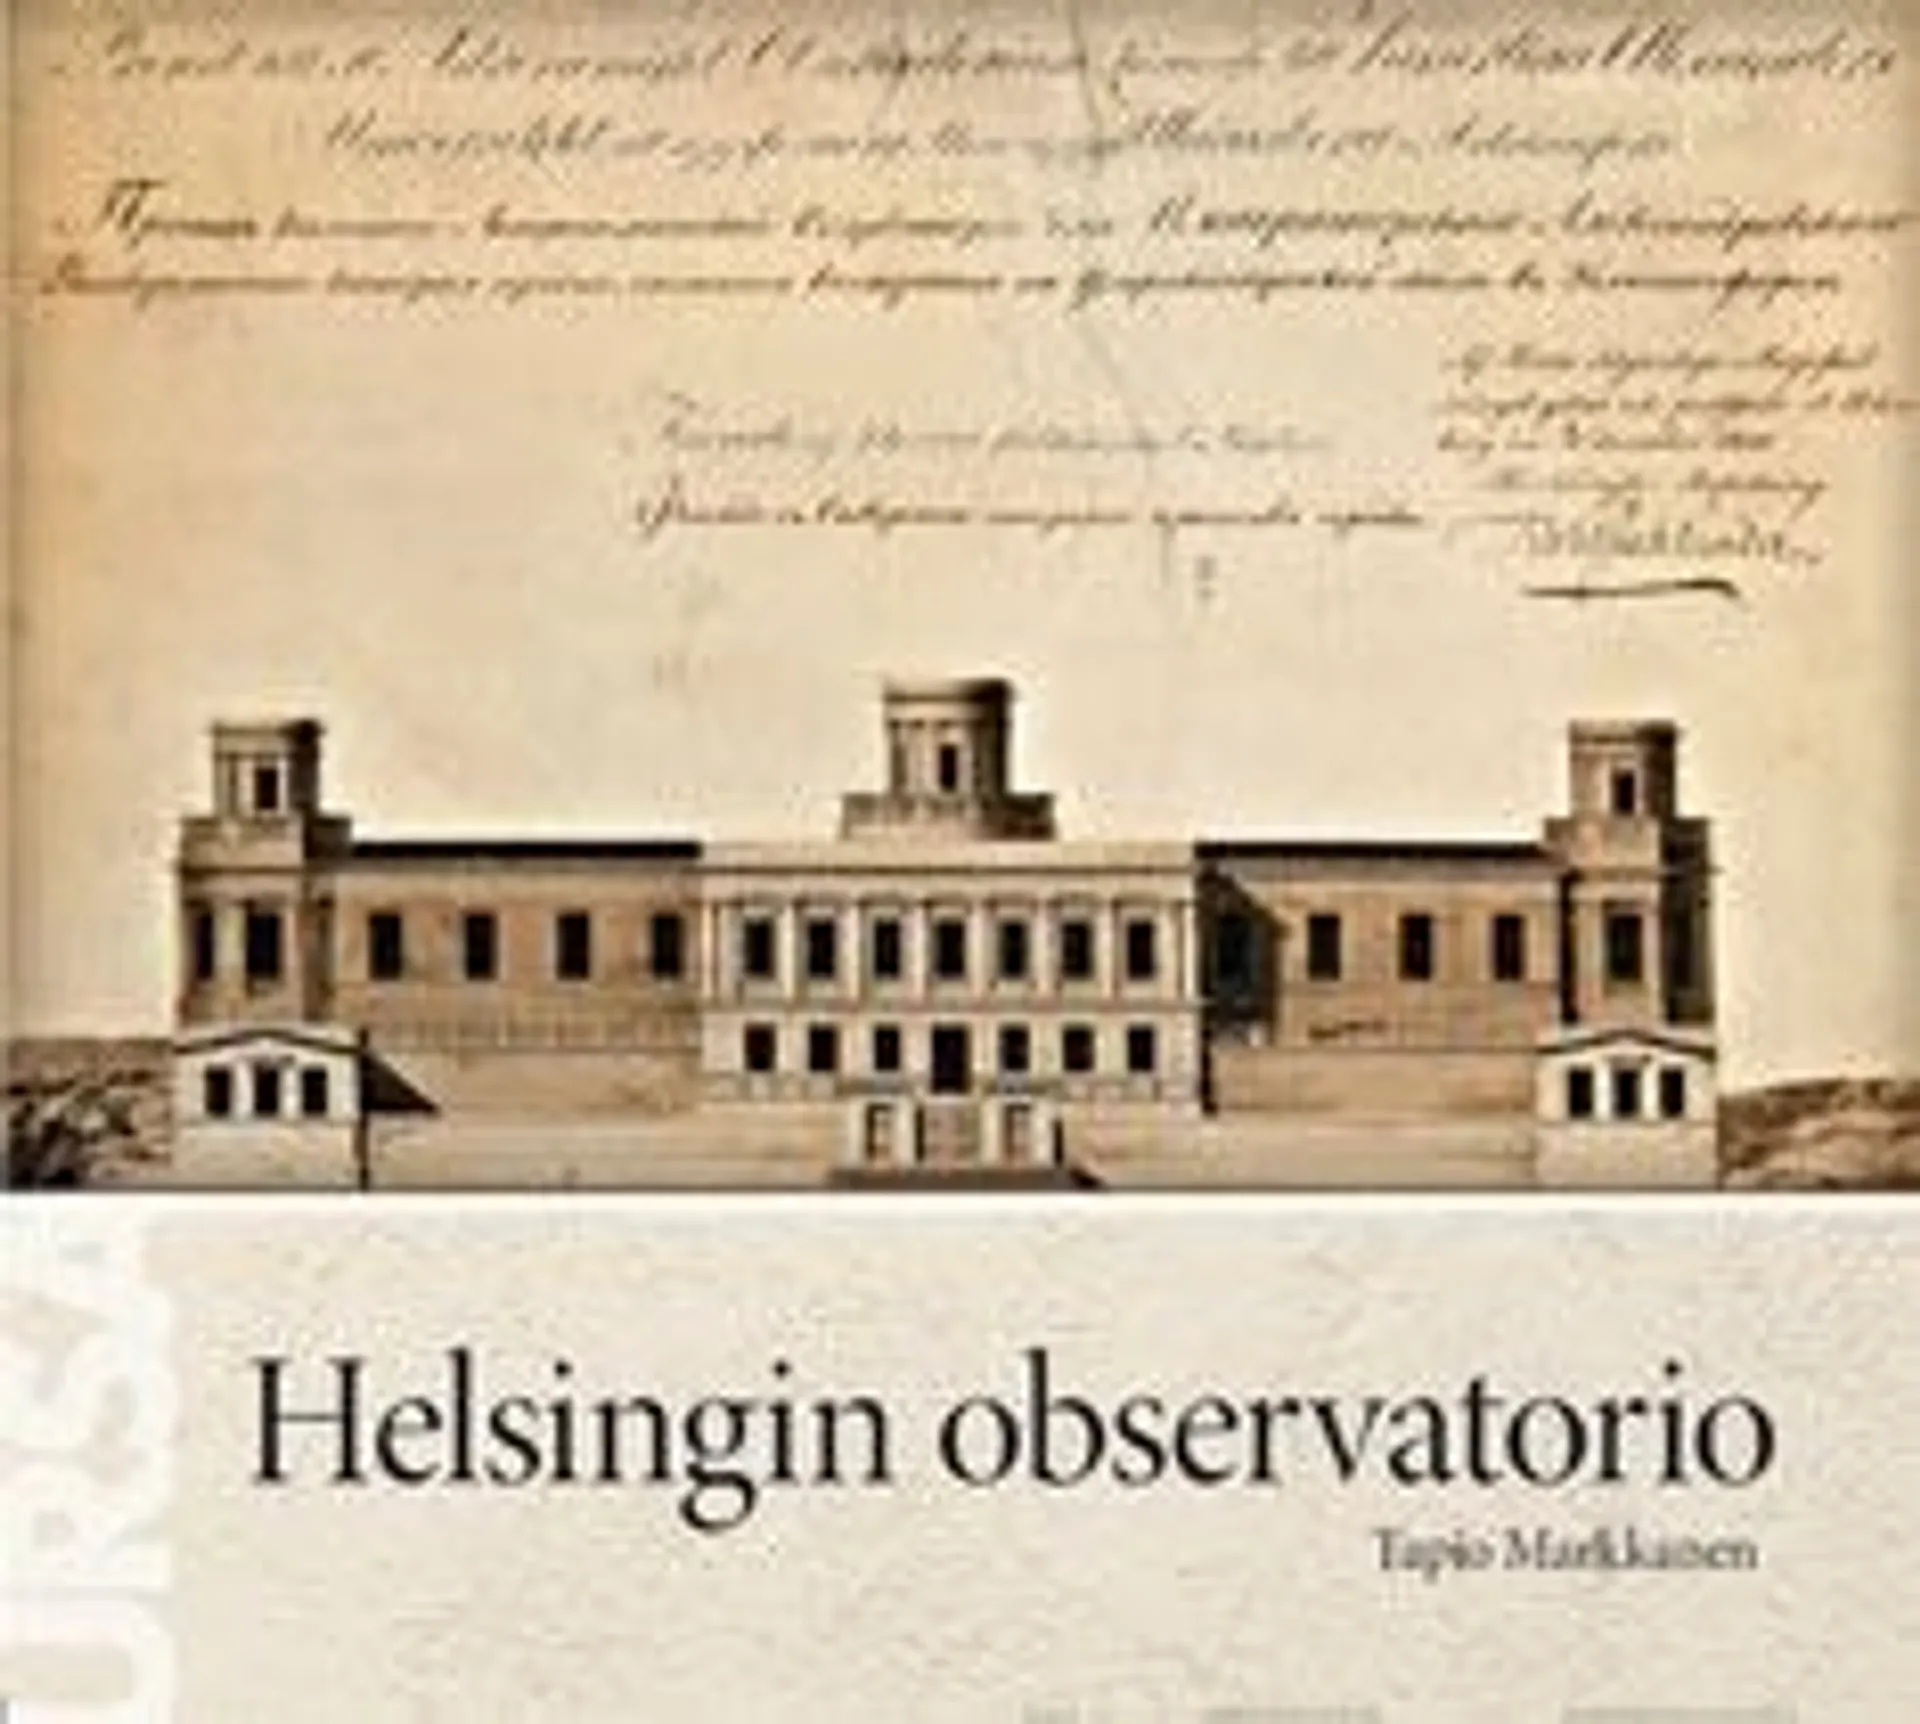 Markkanen, Helsingin observatorio